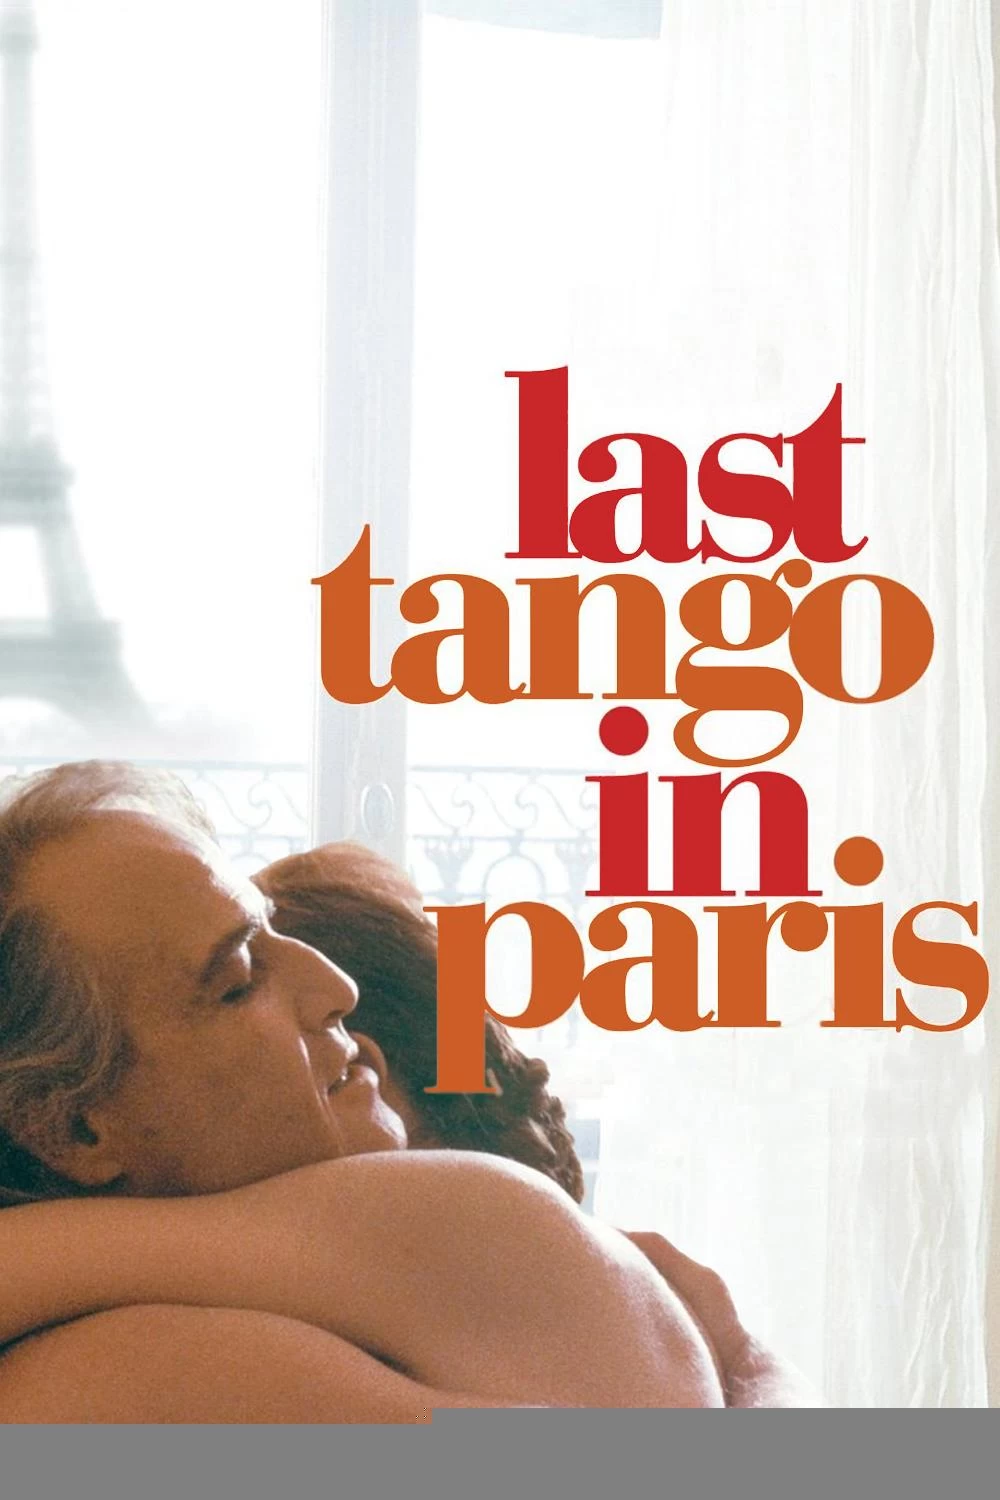 巴黎最后的探戈 蓝光原盘下载+高清MKV版/巴黎最后探戈 / Last Tango in Paris / Le dernier Tango à Paris 1972 Ultimo tango a Parigi 38.5G